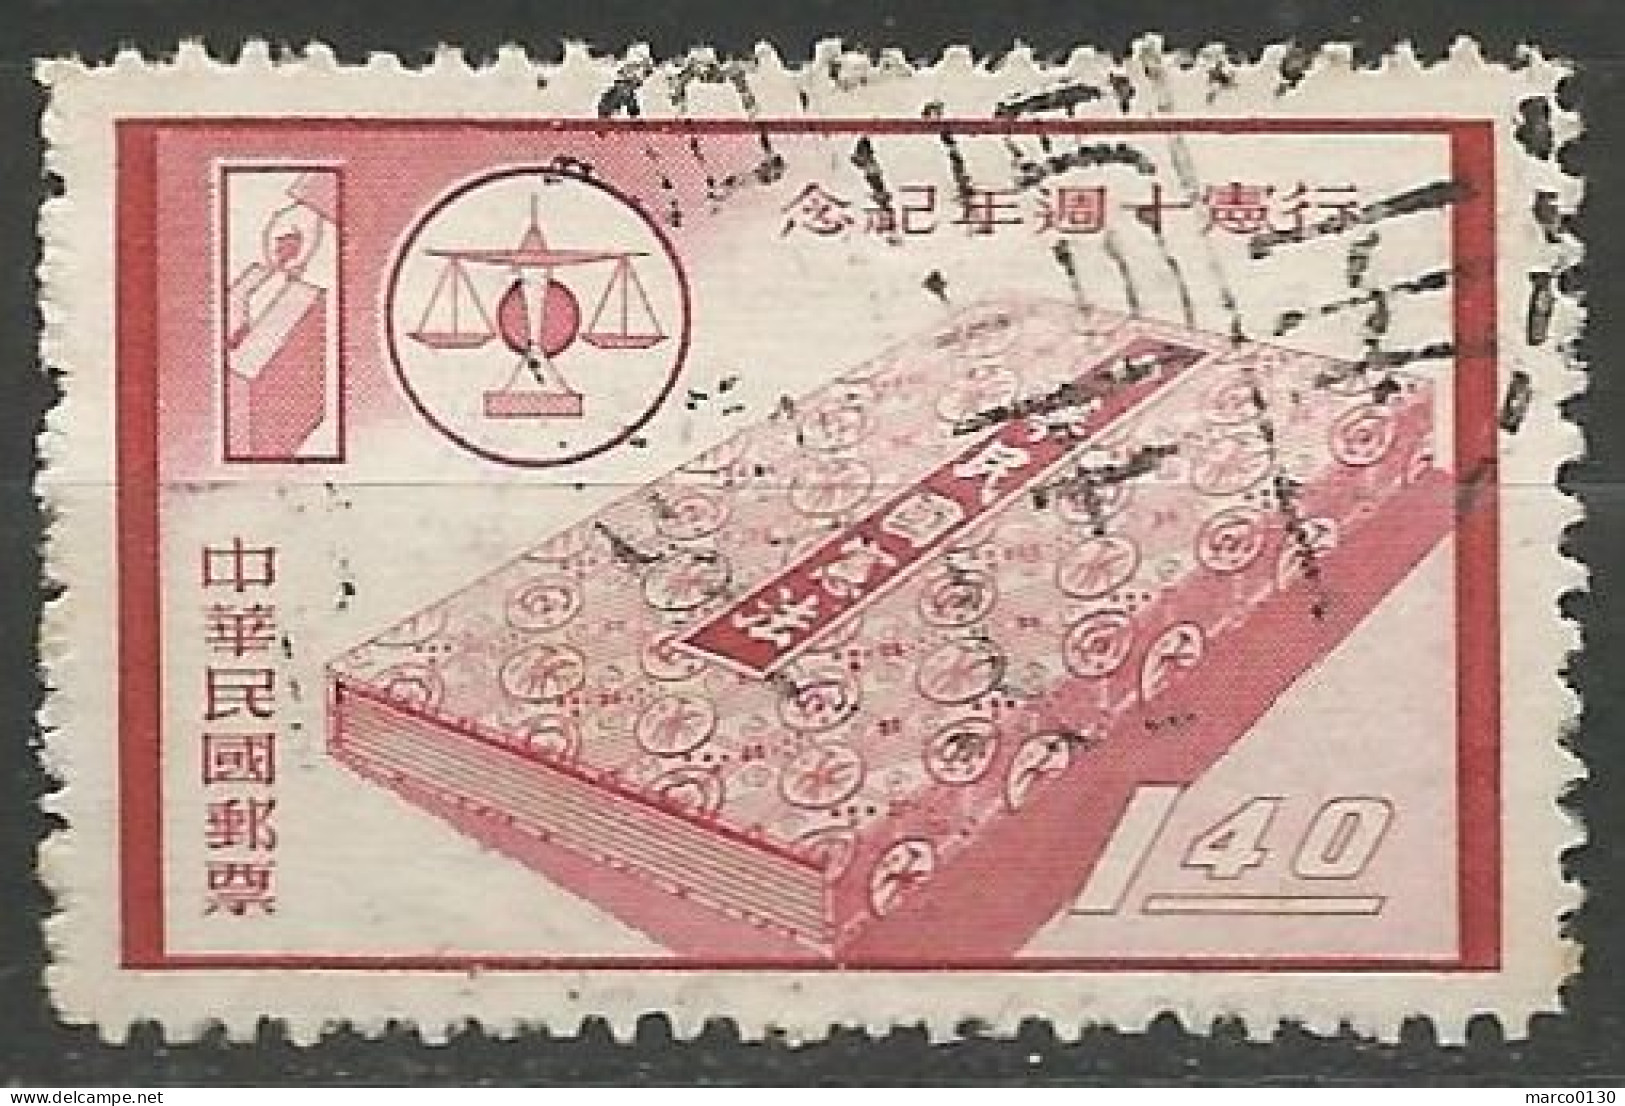 FORMOSE (TAIWAN) N° 280 + N° 281 + N° 282 + N° 283 OBLITERE - Used Stamps